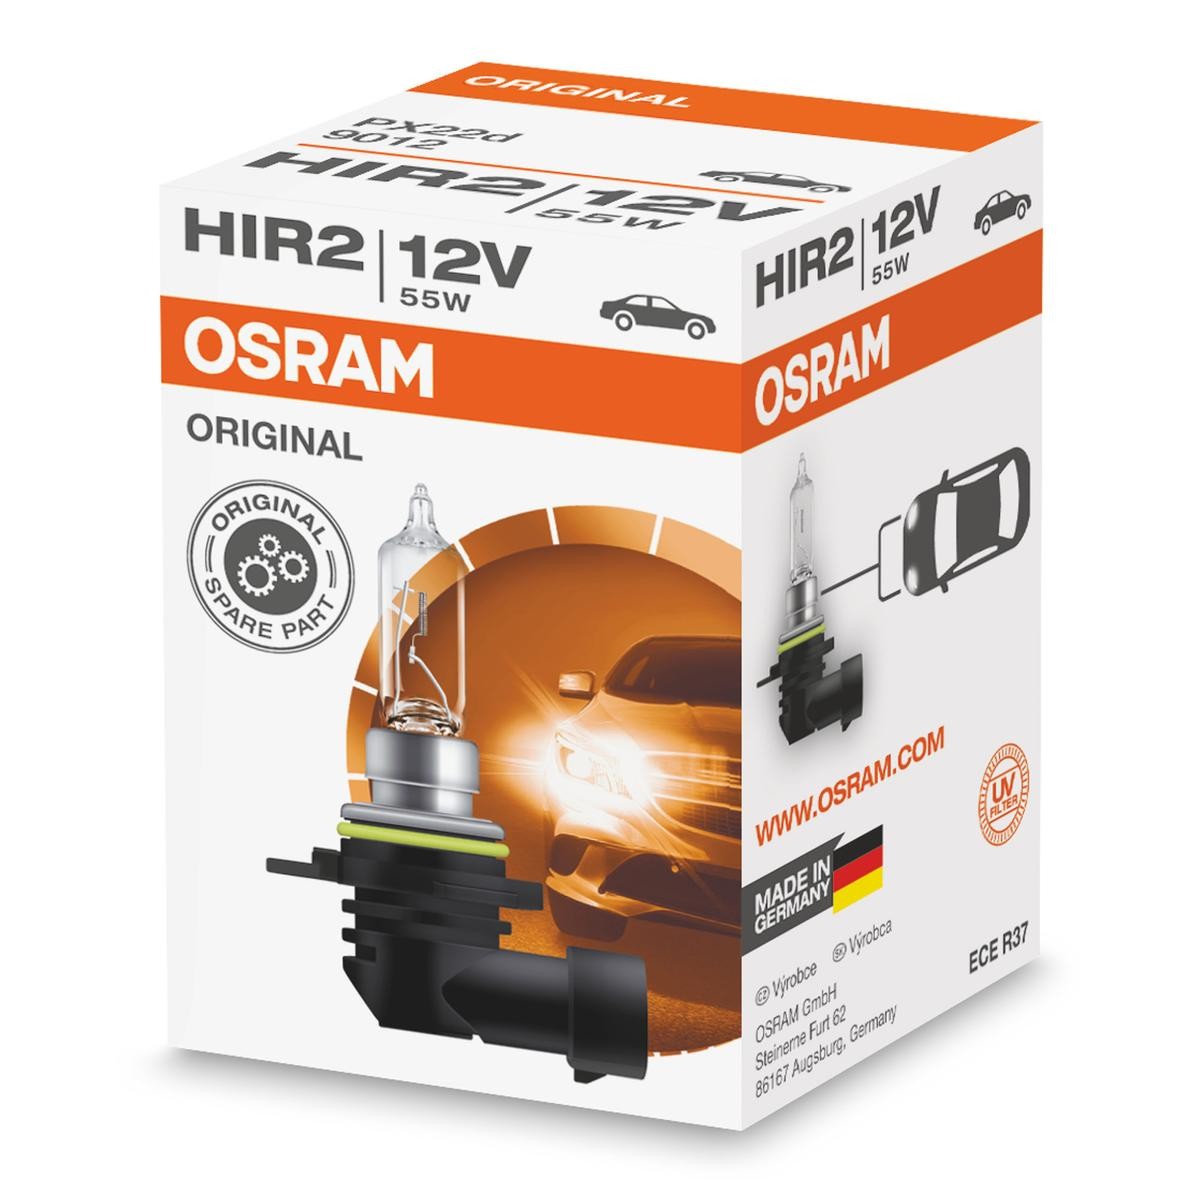 OSRAM 9012 Ampoule de phare HIR2 12V 55W3200K Halogène ORIGINAL